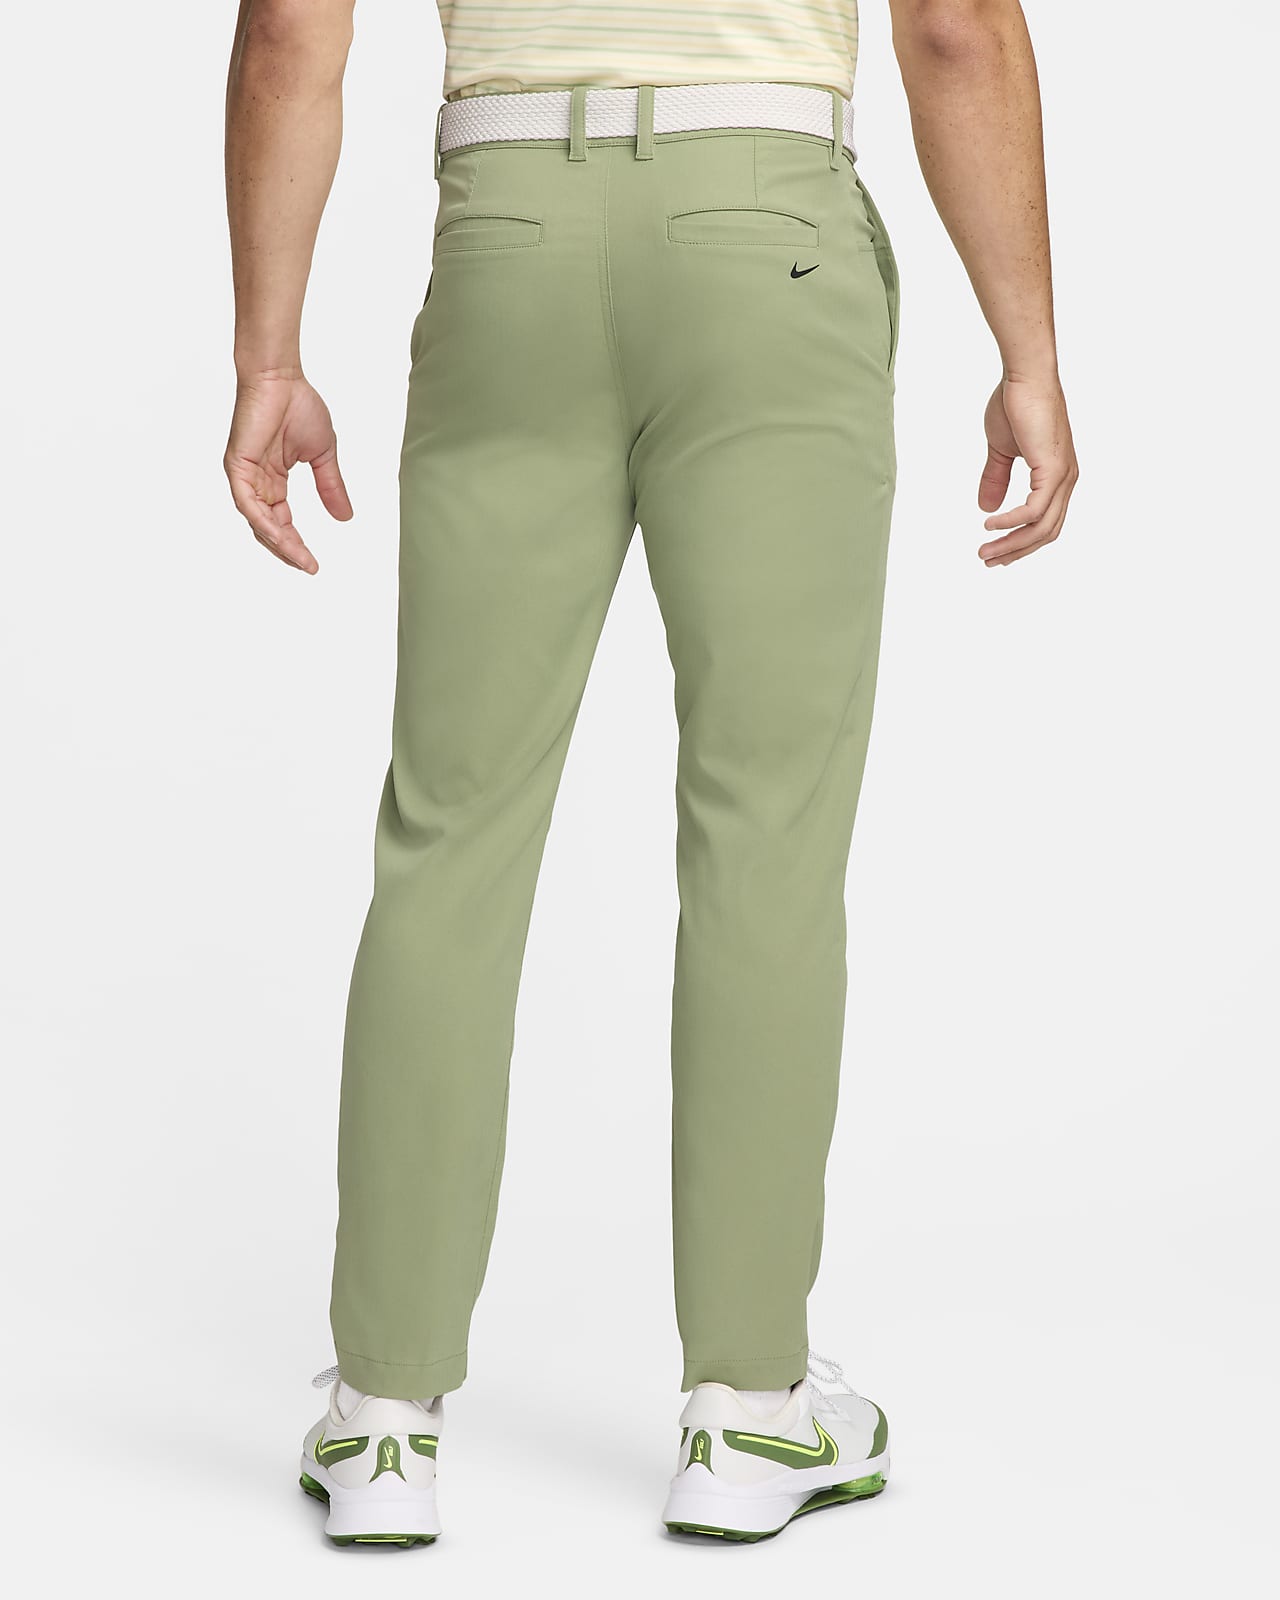 Nike Golf Pants Women's Sz 8 Light Orewood Khaki Flex Jean Golf $95  BV6081-025